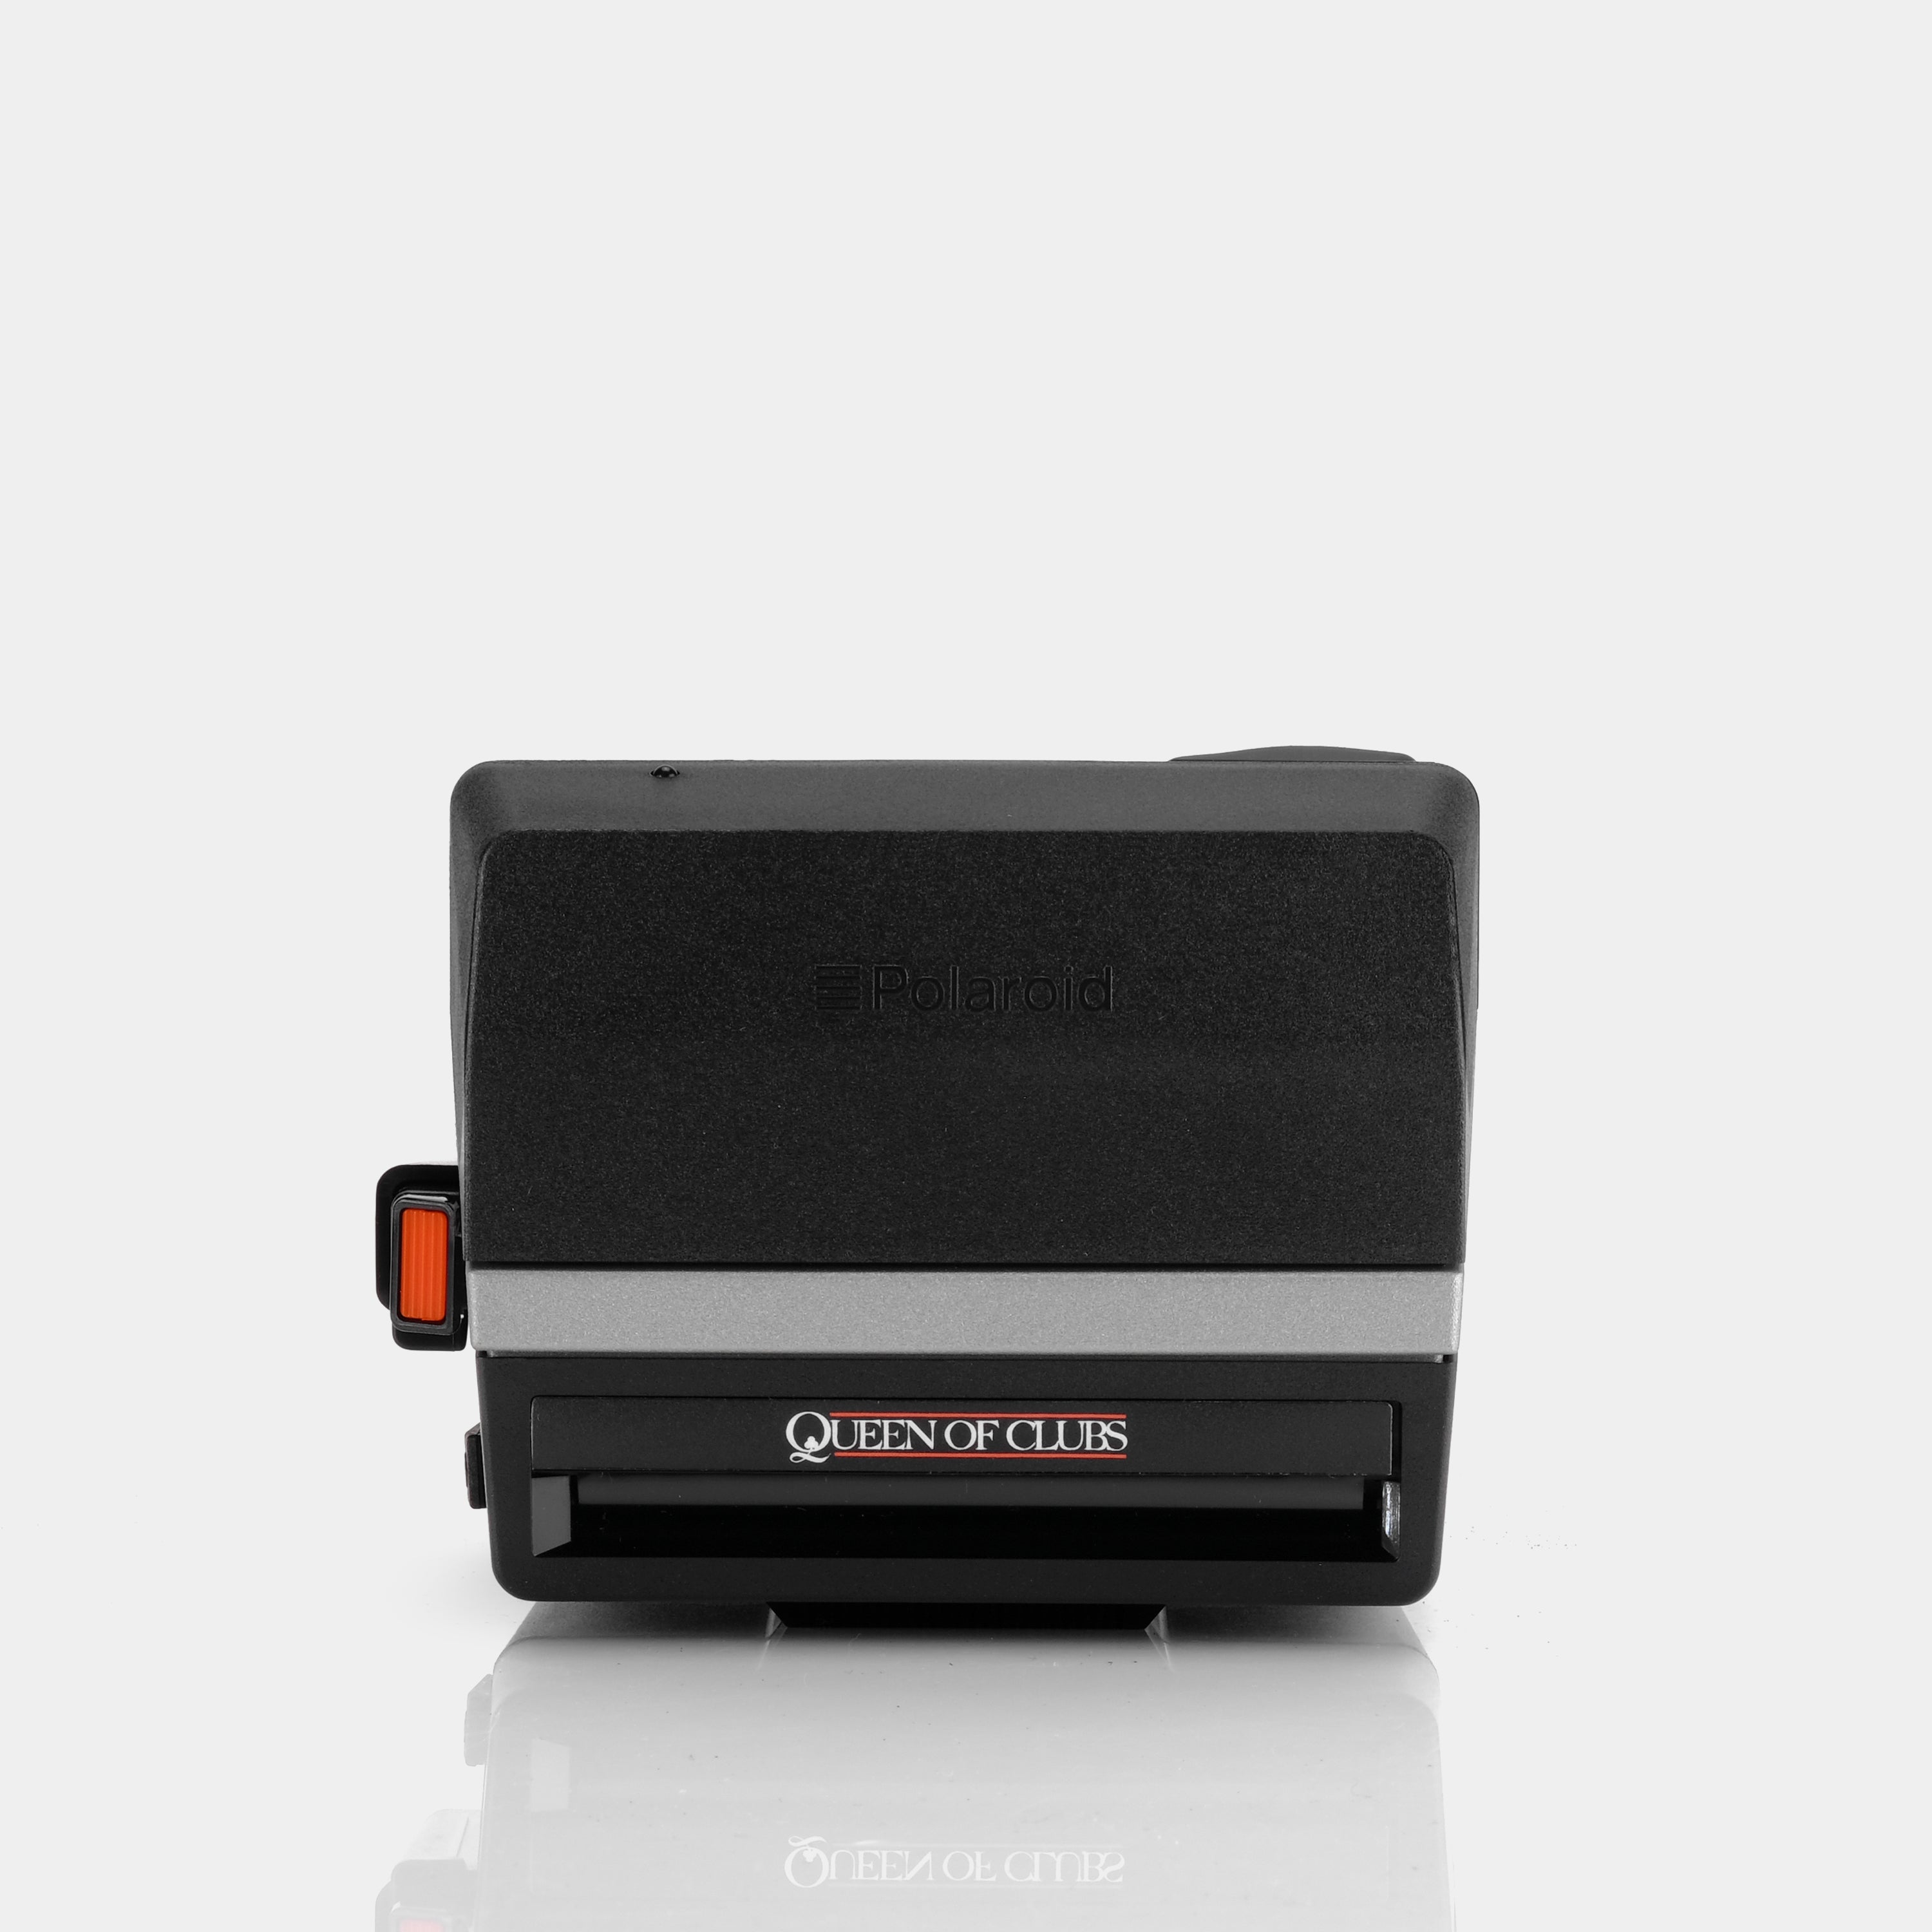 Polaroid 600 Queen of Clubs Casino Queen Instant Film Camera